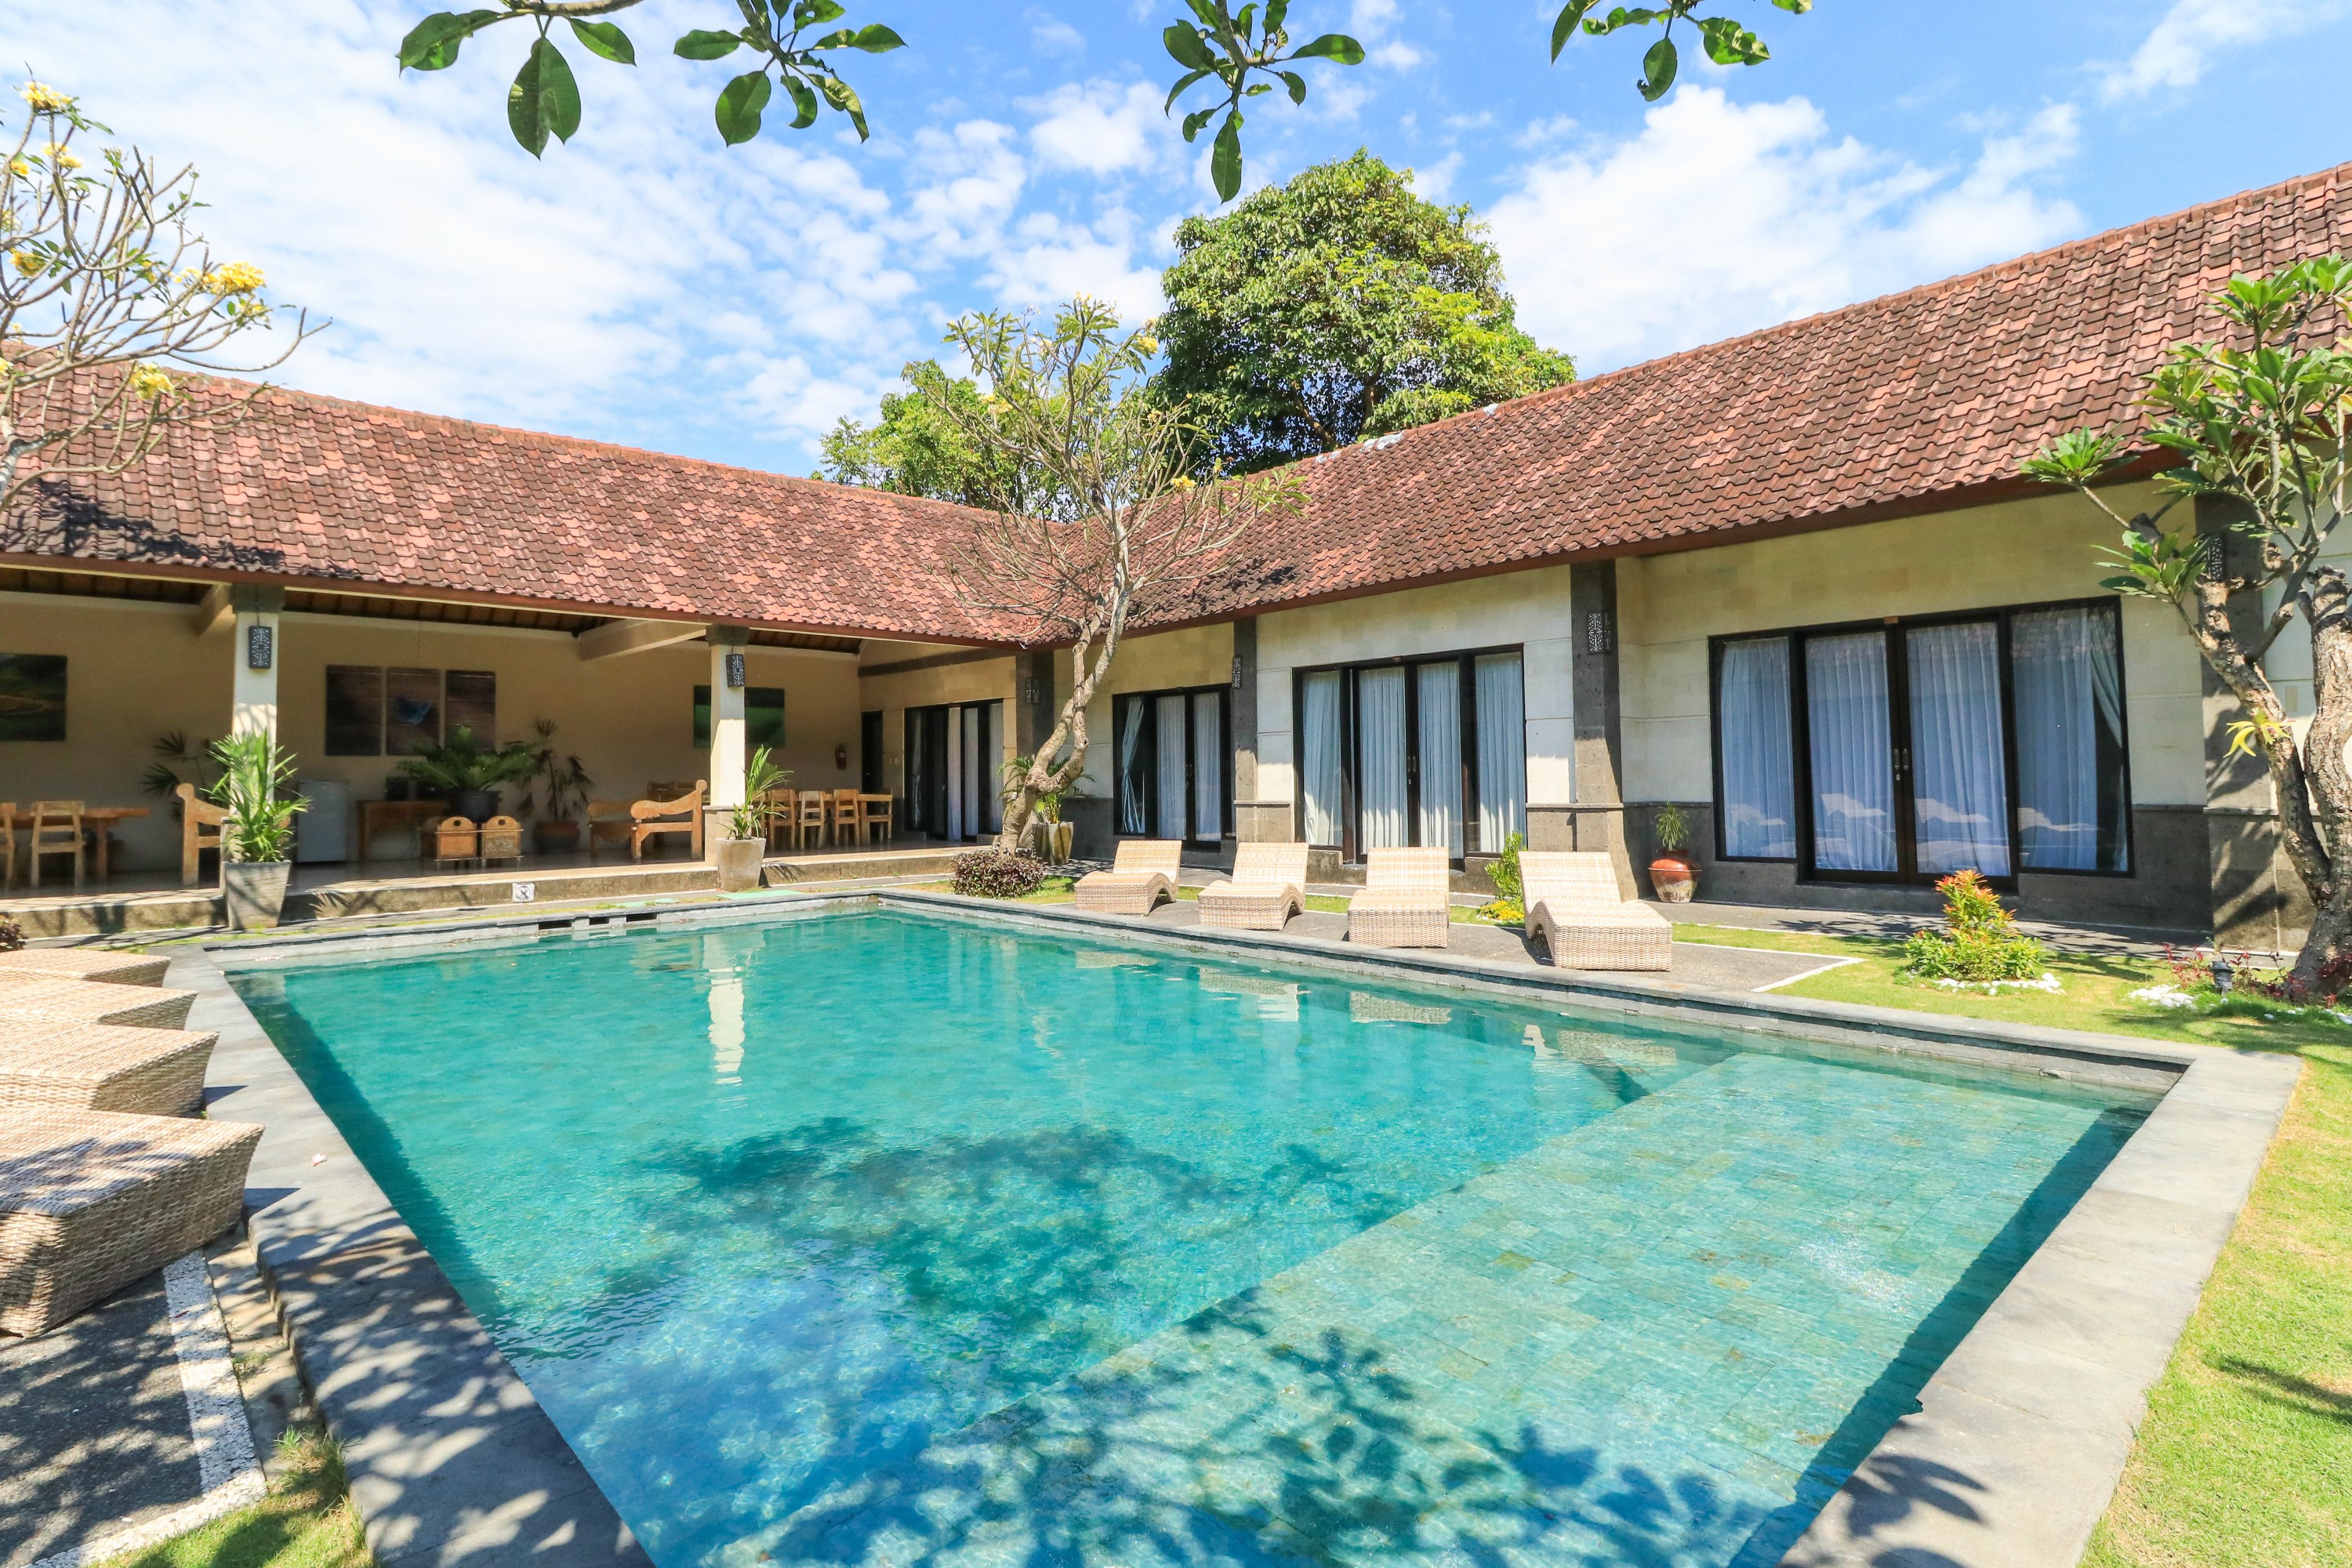 Bali Merita Villa